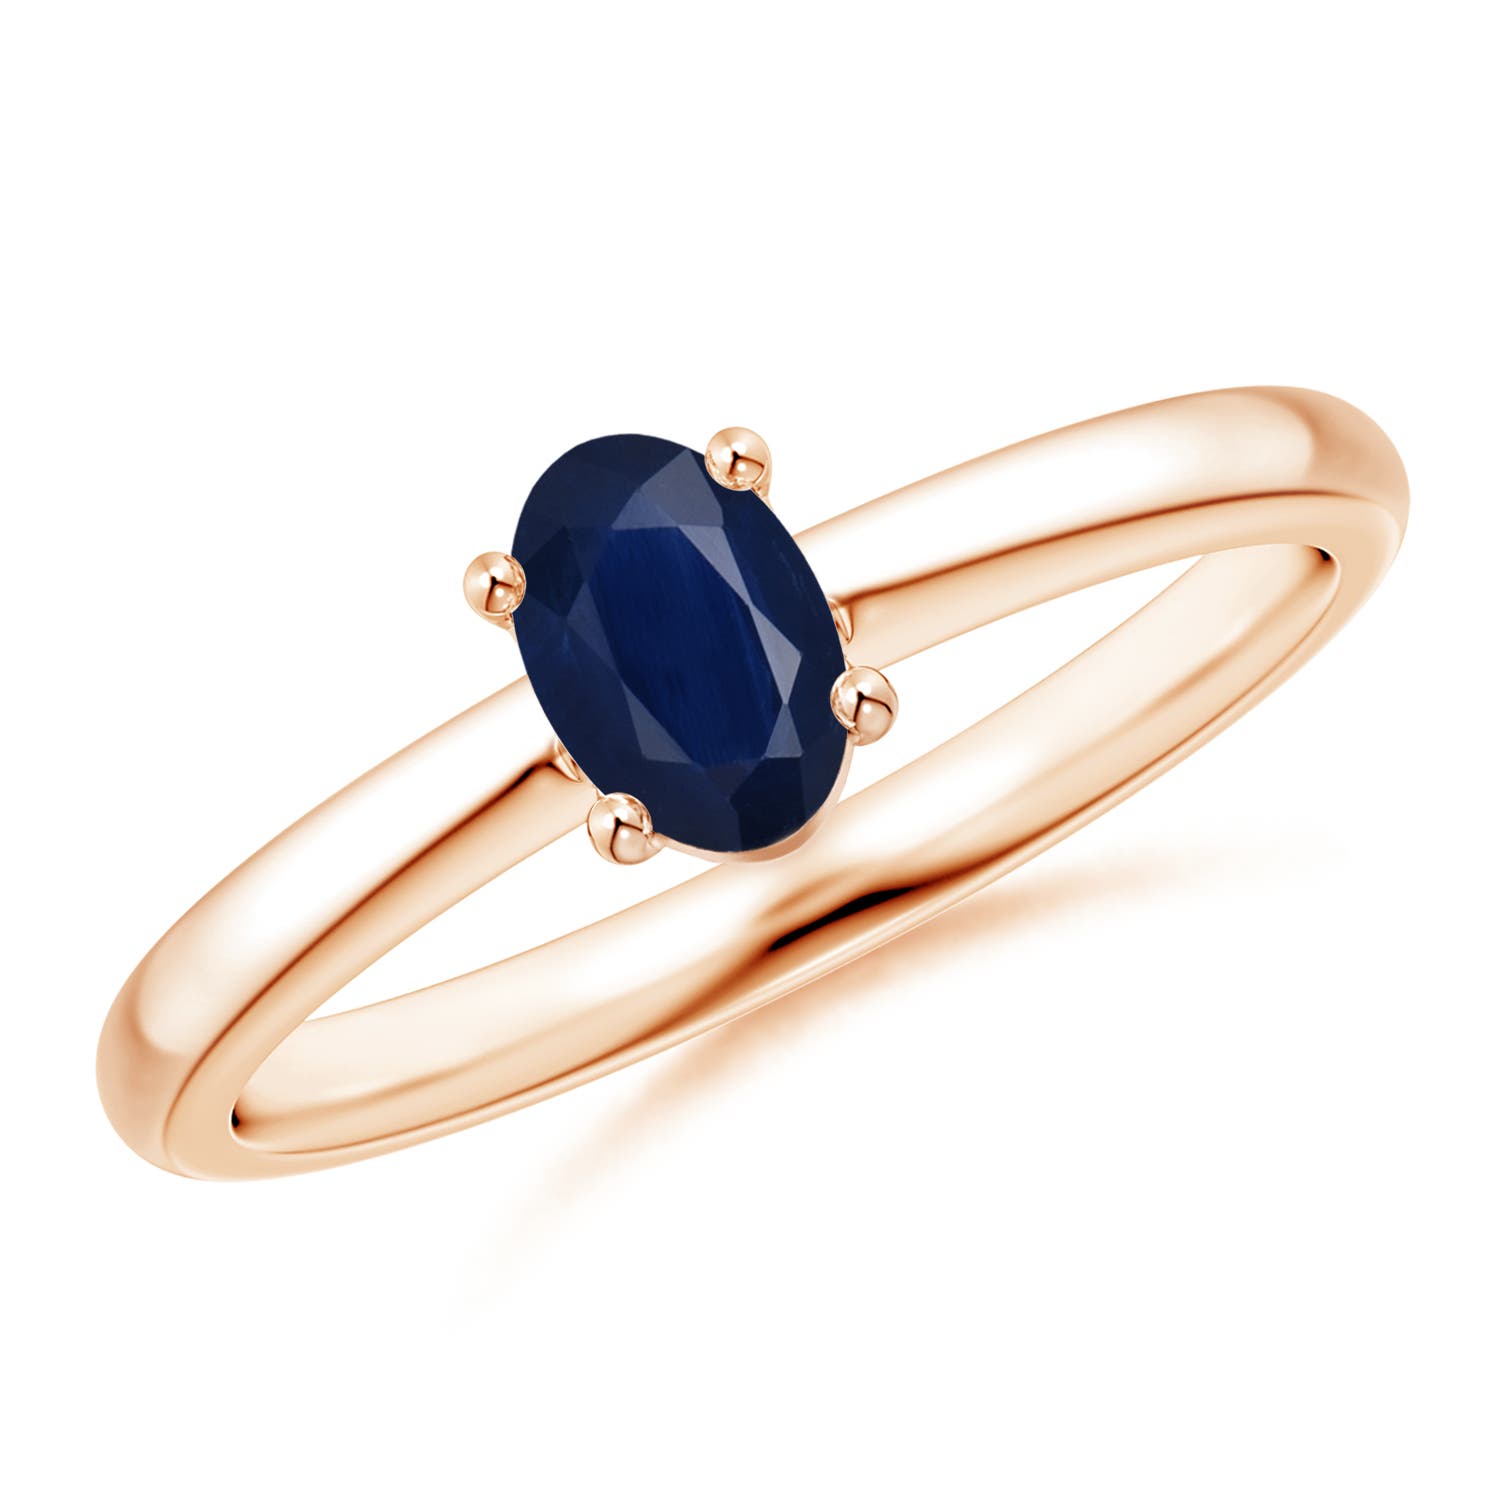 A - Blue Sapphire / 0.6 CT / 14 KT Rose Gold